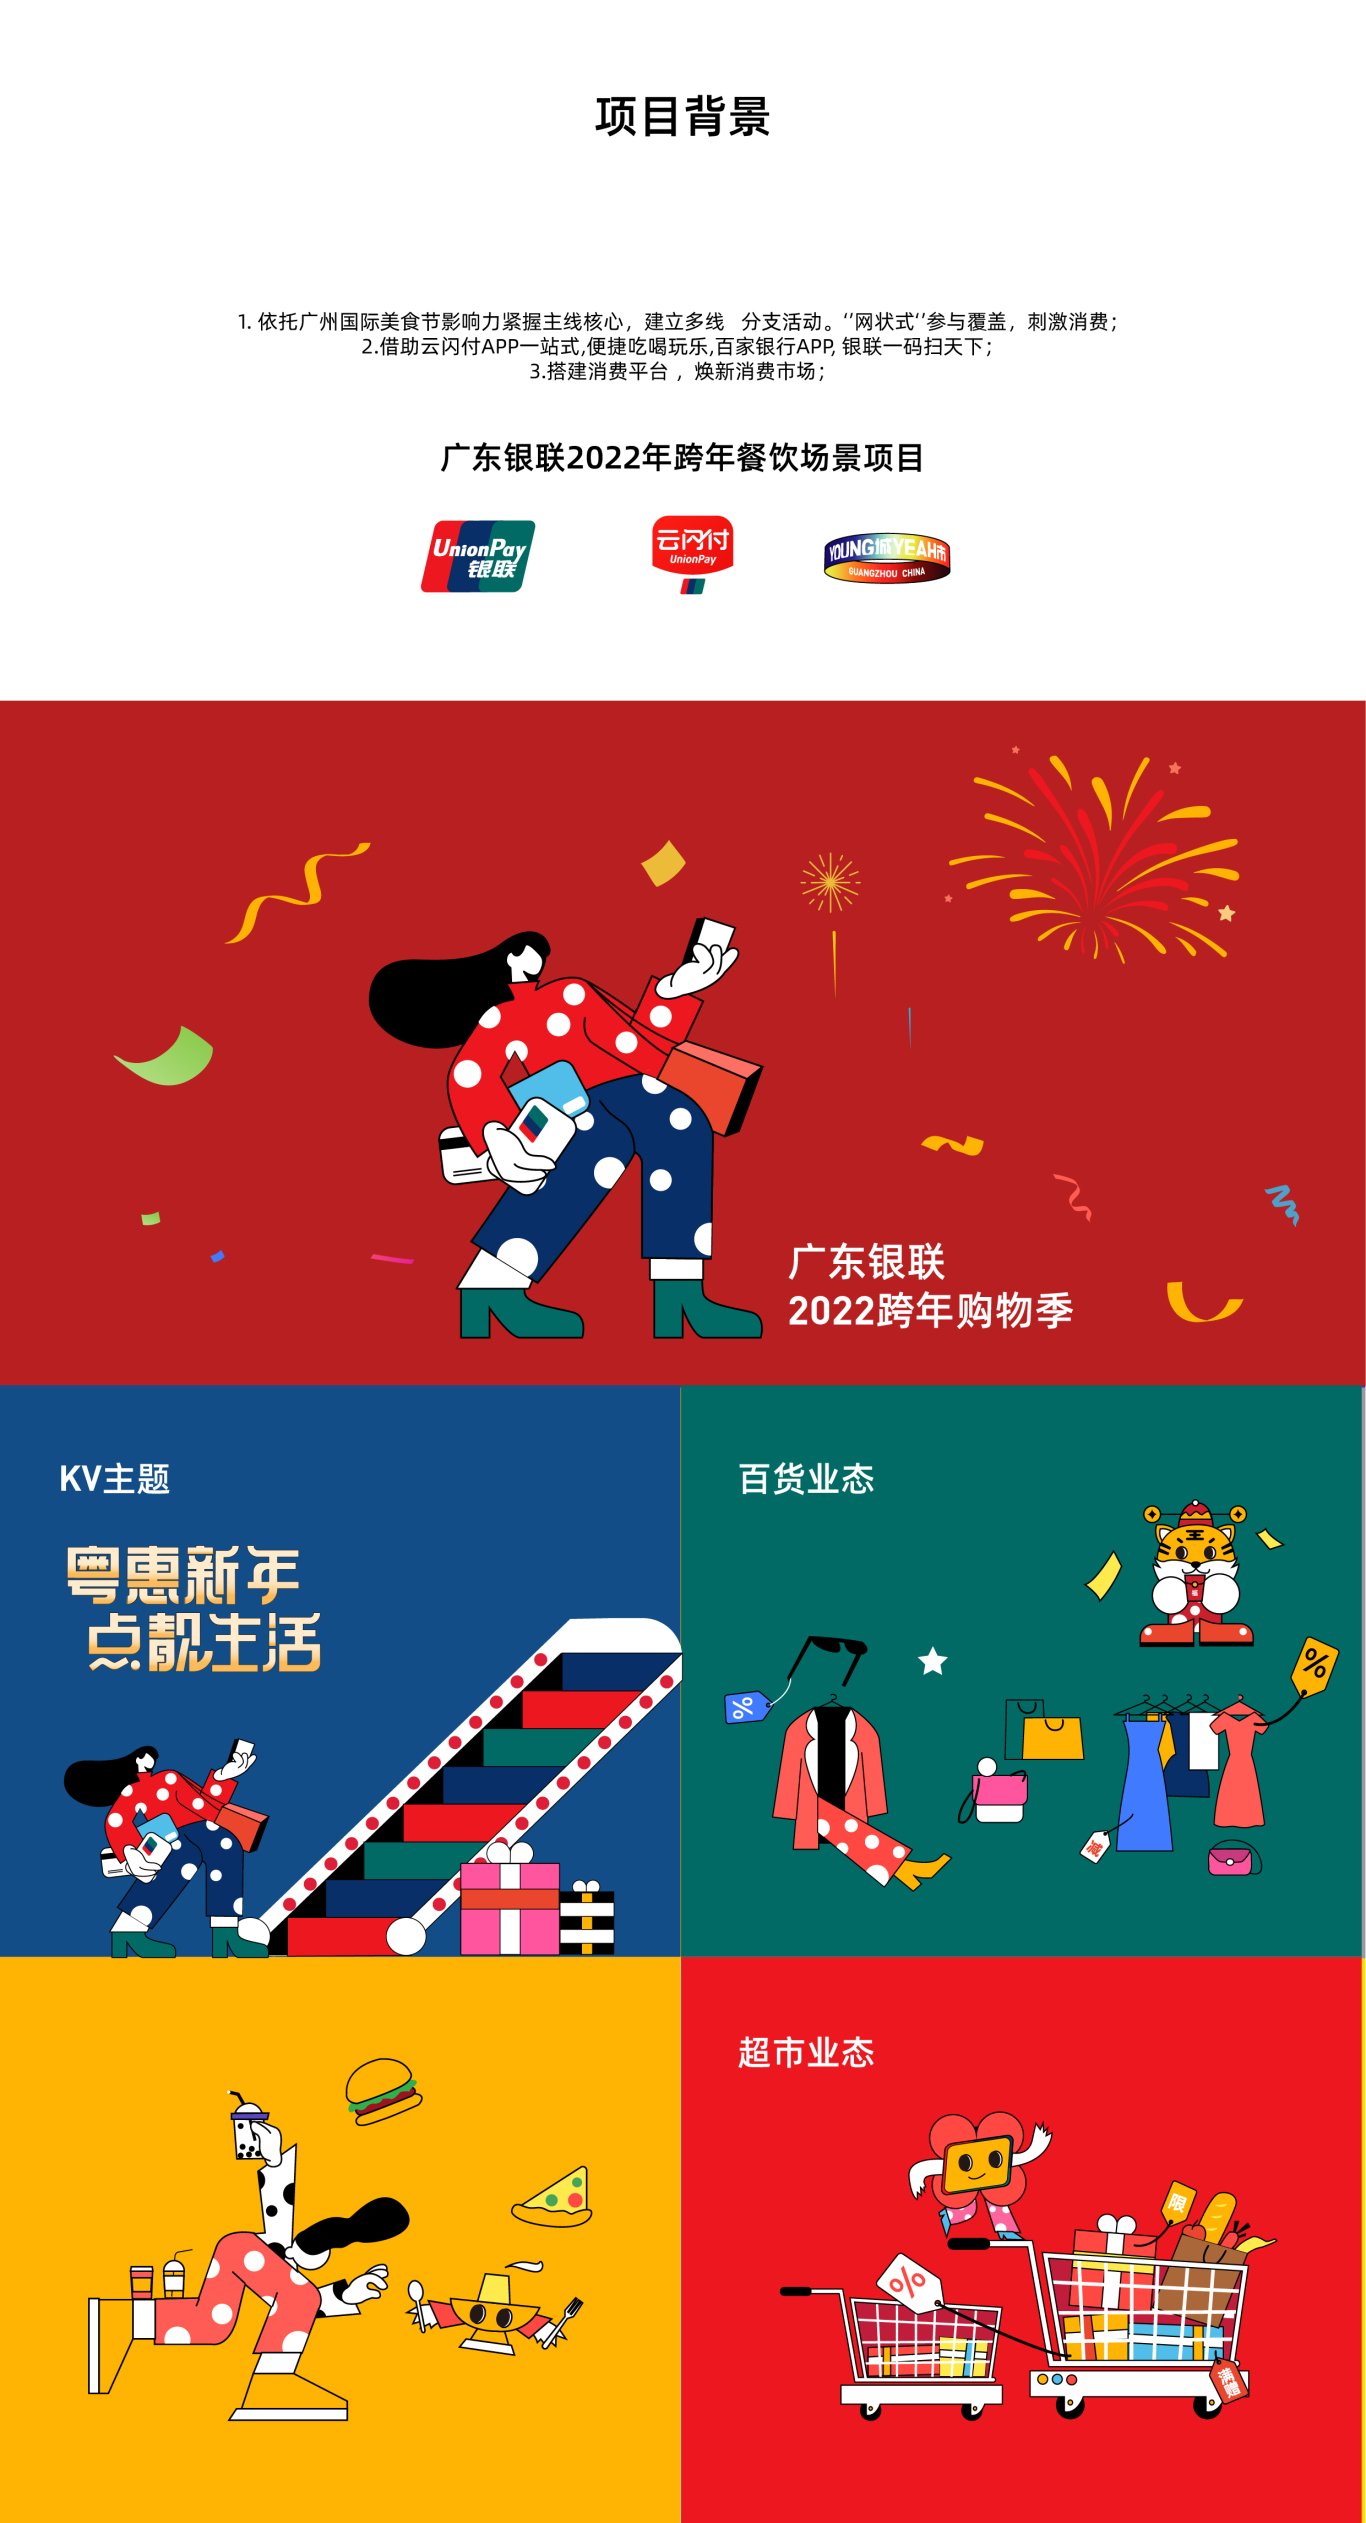 广东银联2022年跨年购物季活动一一粤惠新年，点靓生活图0